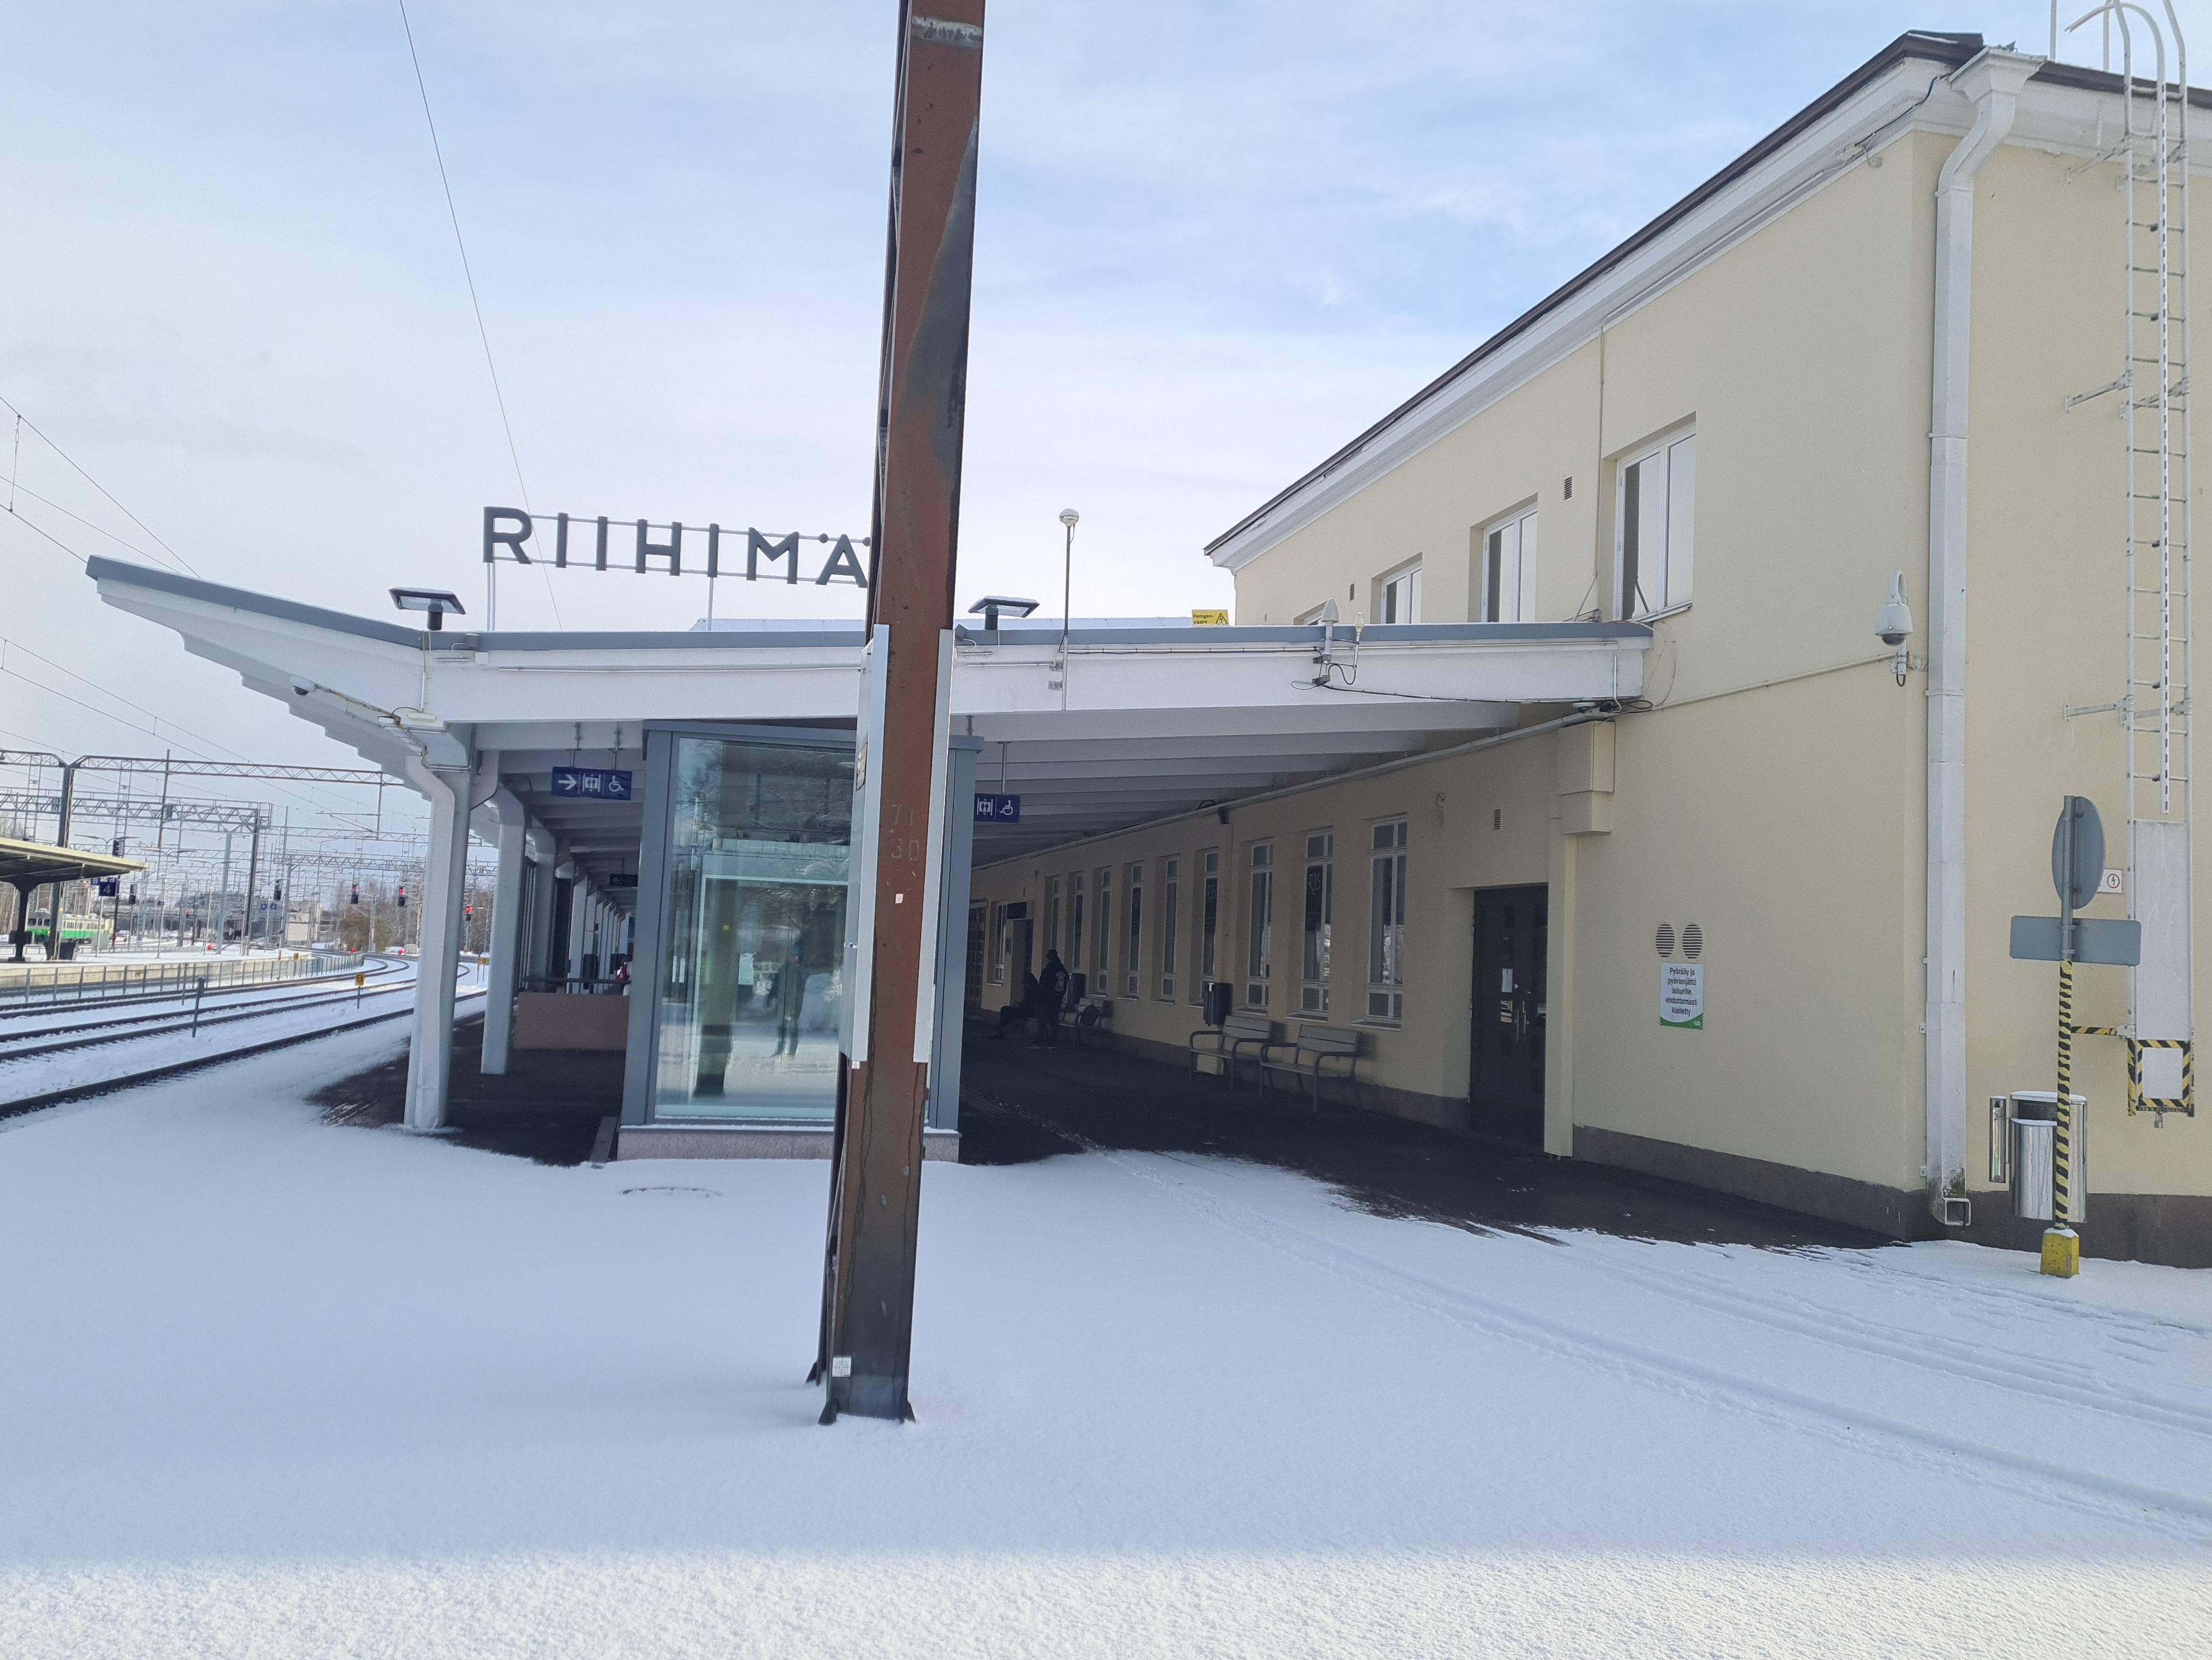 Riihimäen rautatieaseman laiturialue. 1930-luvulla valmistuneen aseman suunnitteli Thure Hellström. Kuva: Riihimäen kaupunginmuseo rephoto